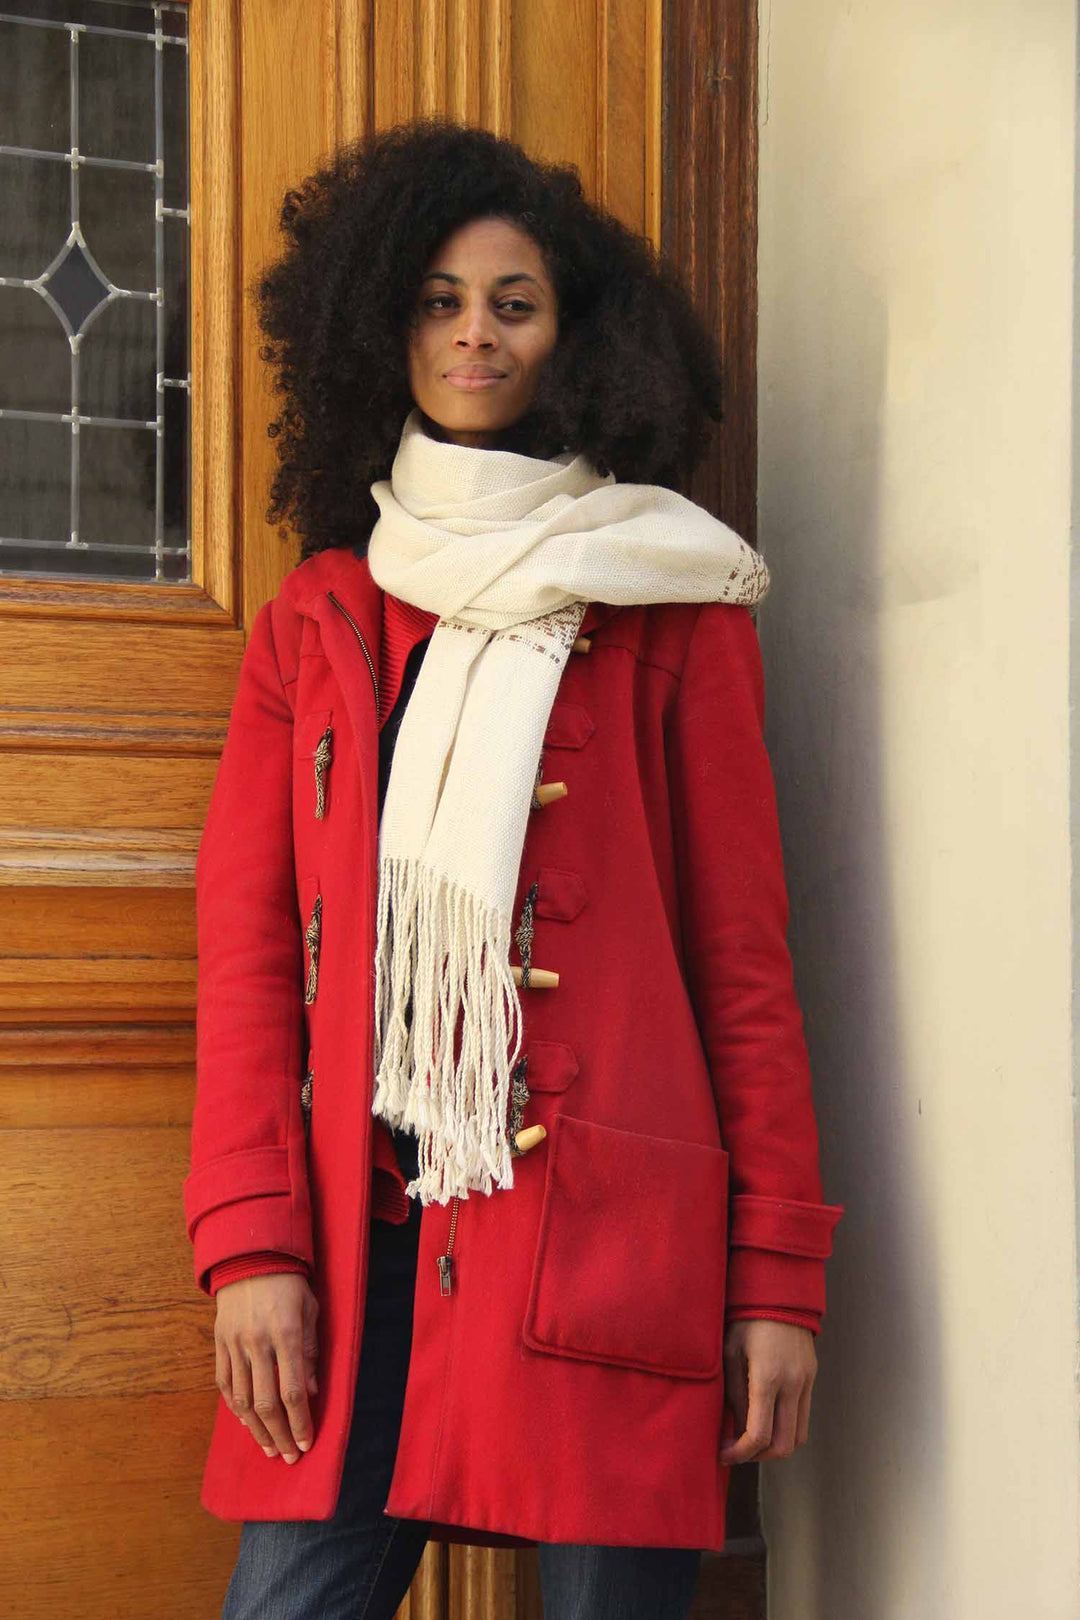 Afrikanische Frau mit einem weißen handgemachten Alpaka-Schal und einem roten Mantel.